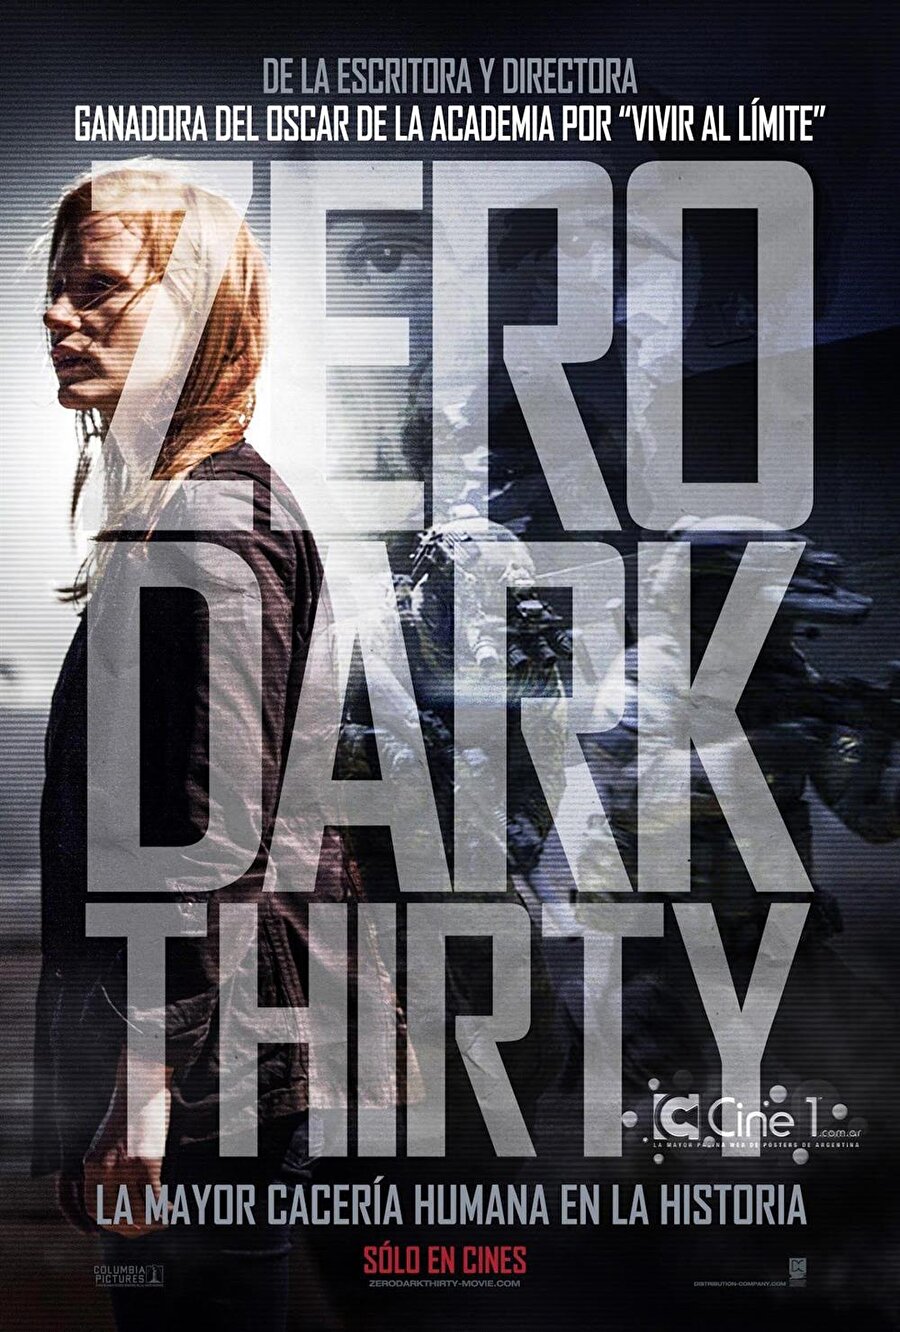 57. Zero Dark Thirty / Karanlık Operasyon

                                    
                                    
                                    Yönetmen: Kathryn Bigelow
Yapım Yılı: 2012
Senarist: Mark Boal
Oyuncular: Jessica Chastain, Jason Clarke, Joel Edgerton
Ülke: ABD

                                
                                
                                